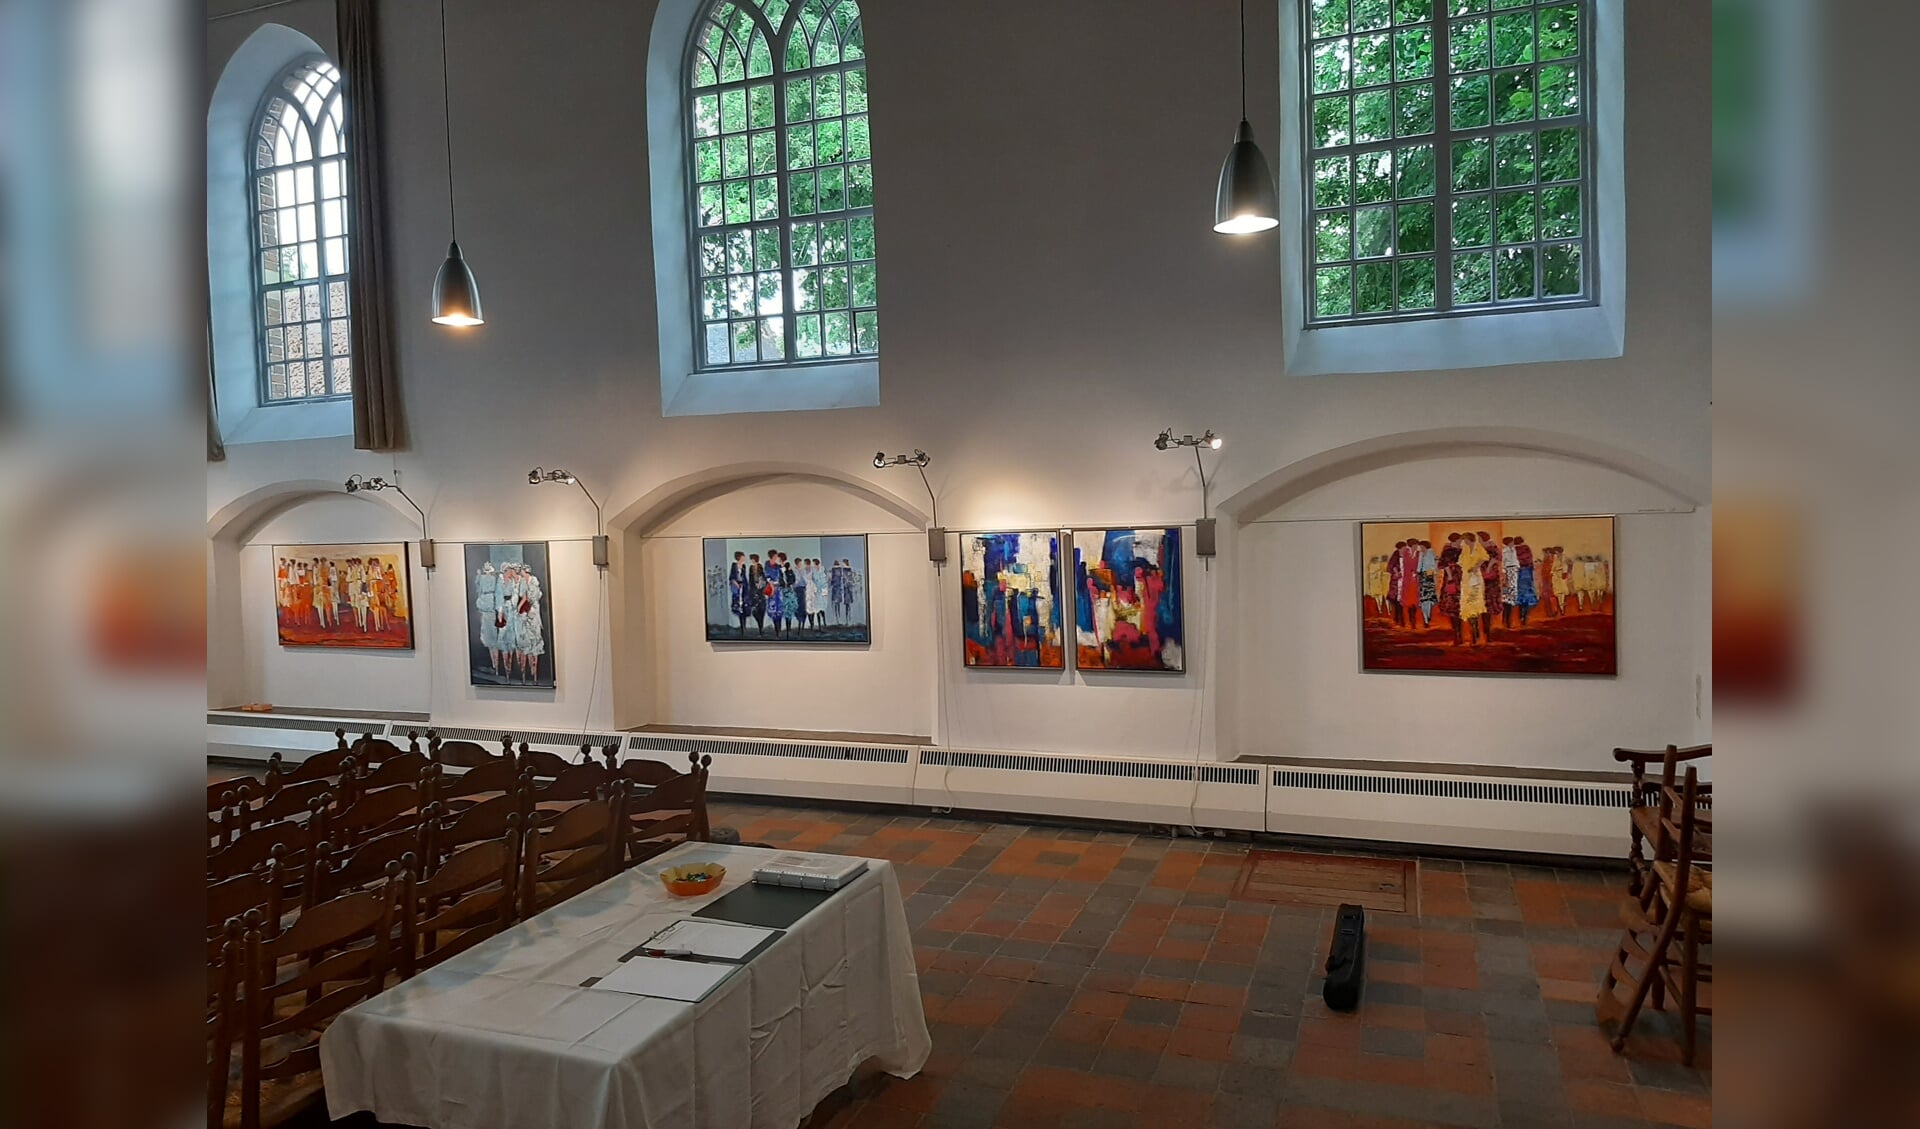 Expositie van Anne von Drehle in de Kapel van Bronkhorst. Eigen foto